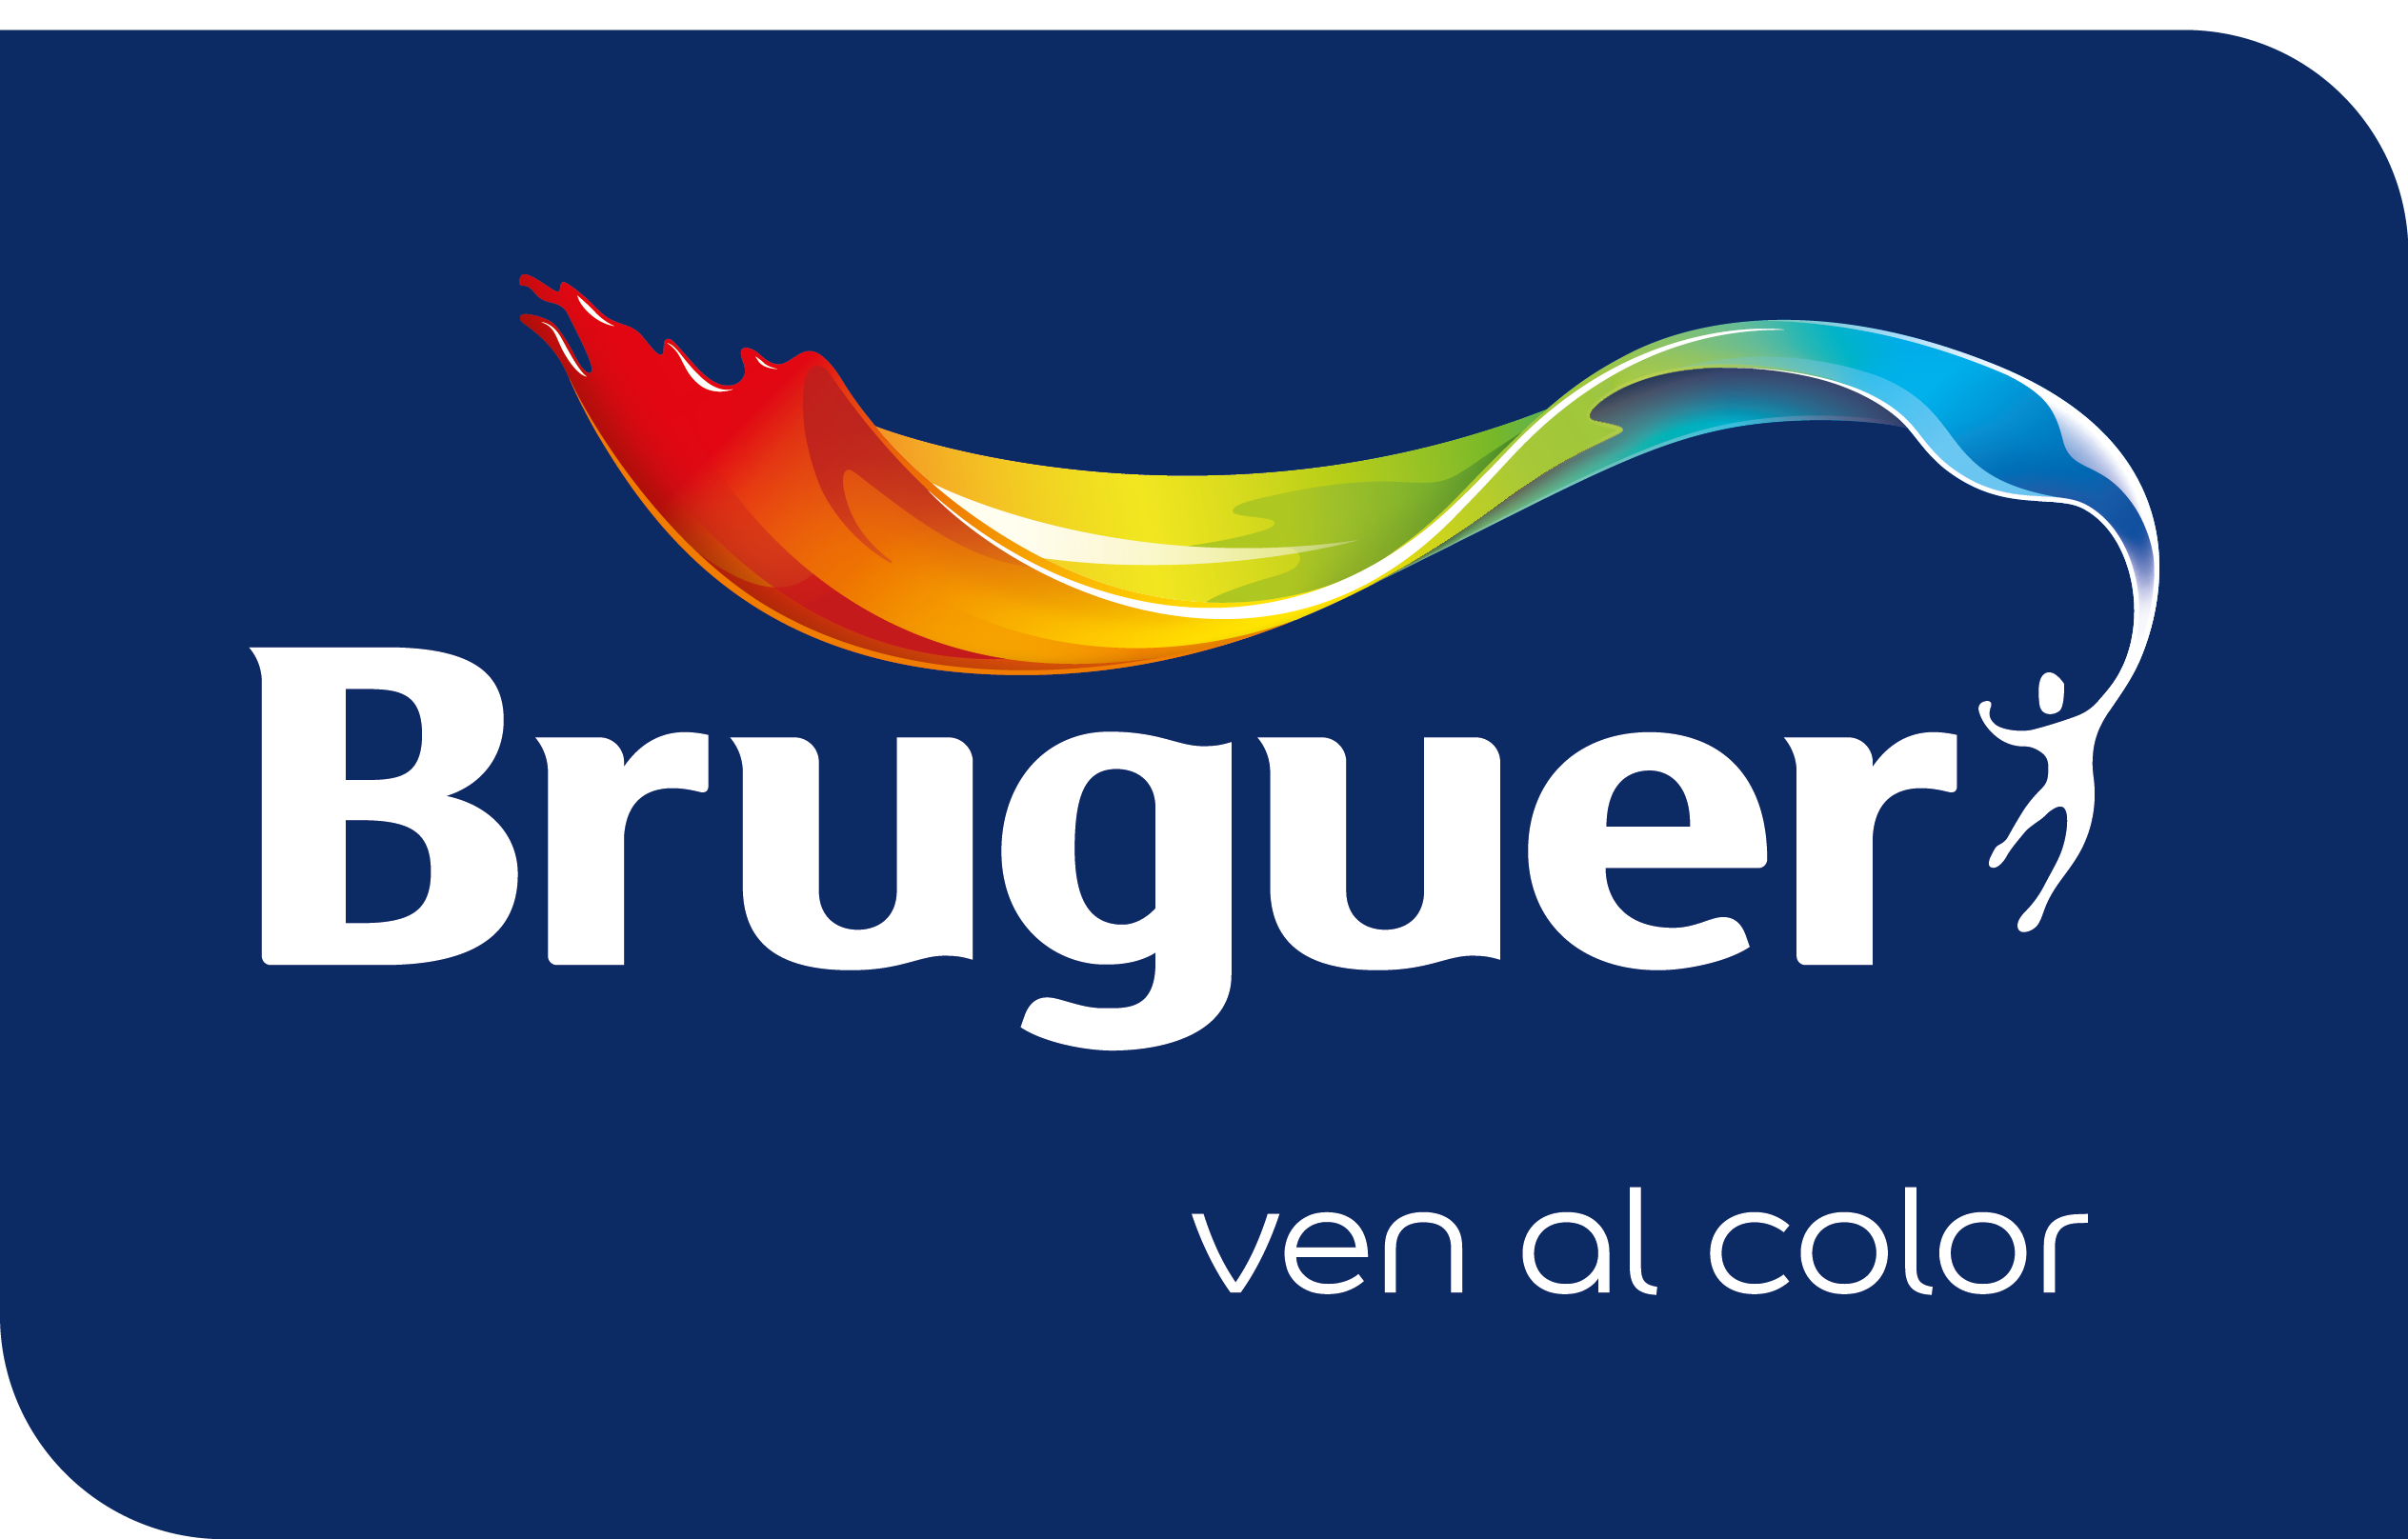 Bruguer%20ven%20al%20color%20web